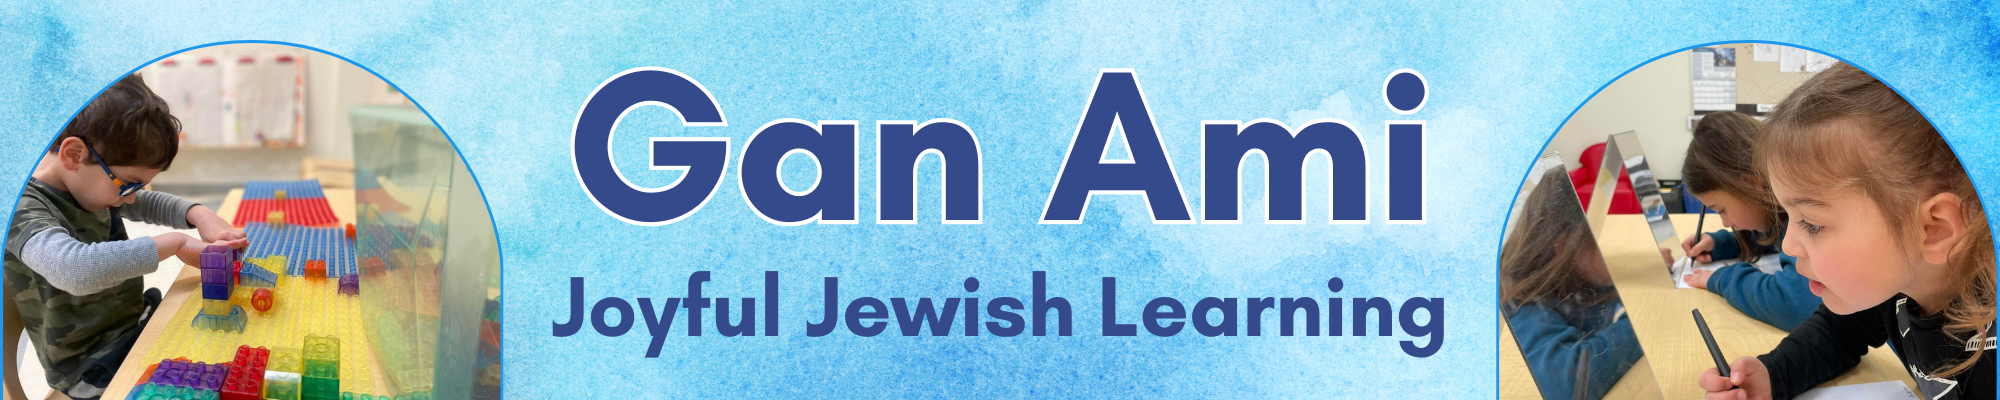 Gan Ami Joyful Jewish